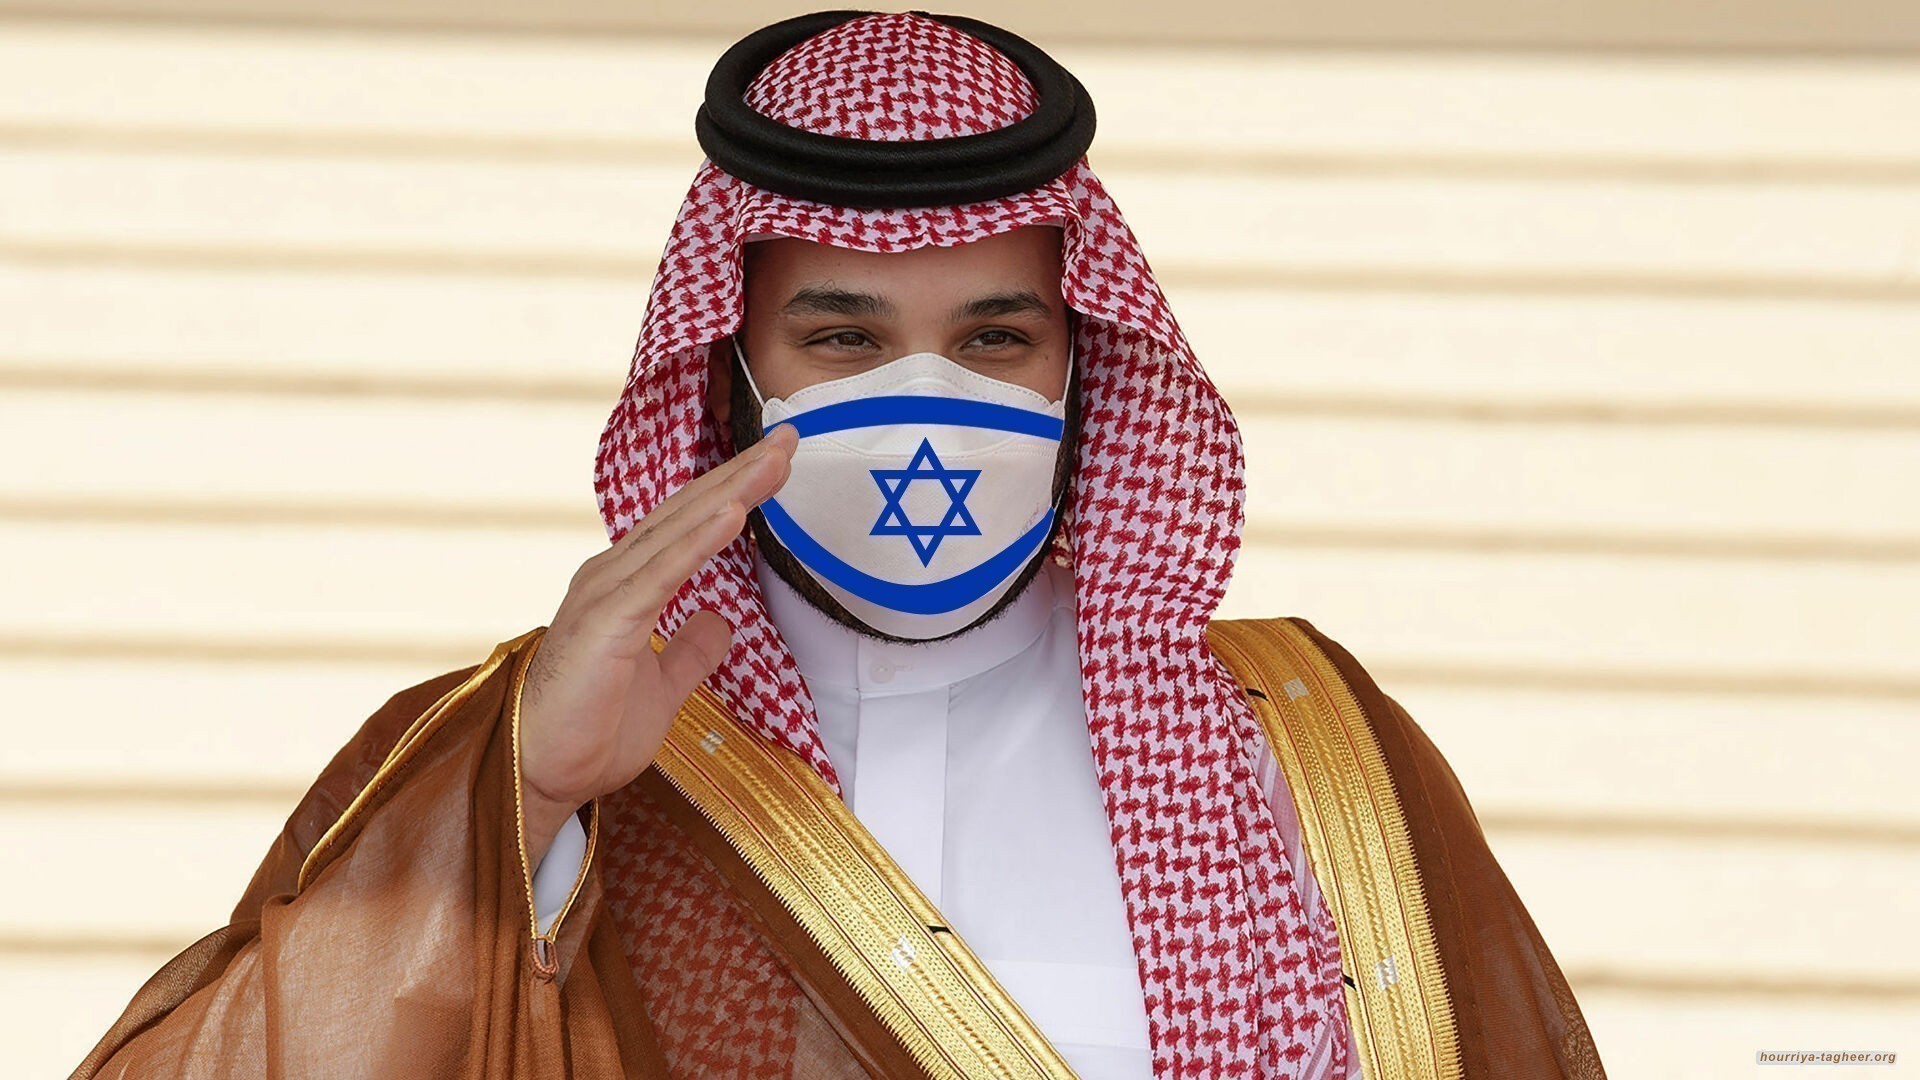 السعودية بزمن ابن سلمان.. يهودية اكثر من الدولة اليهودية